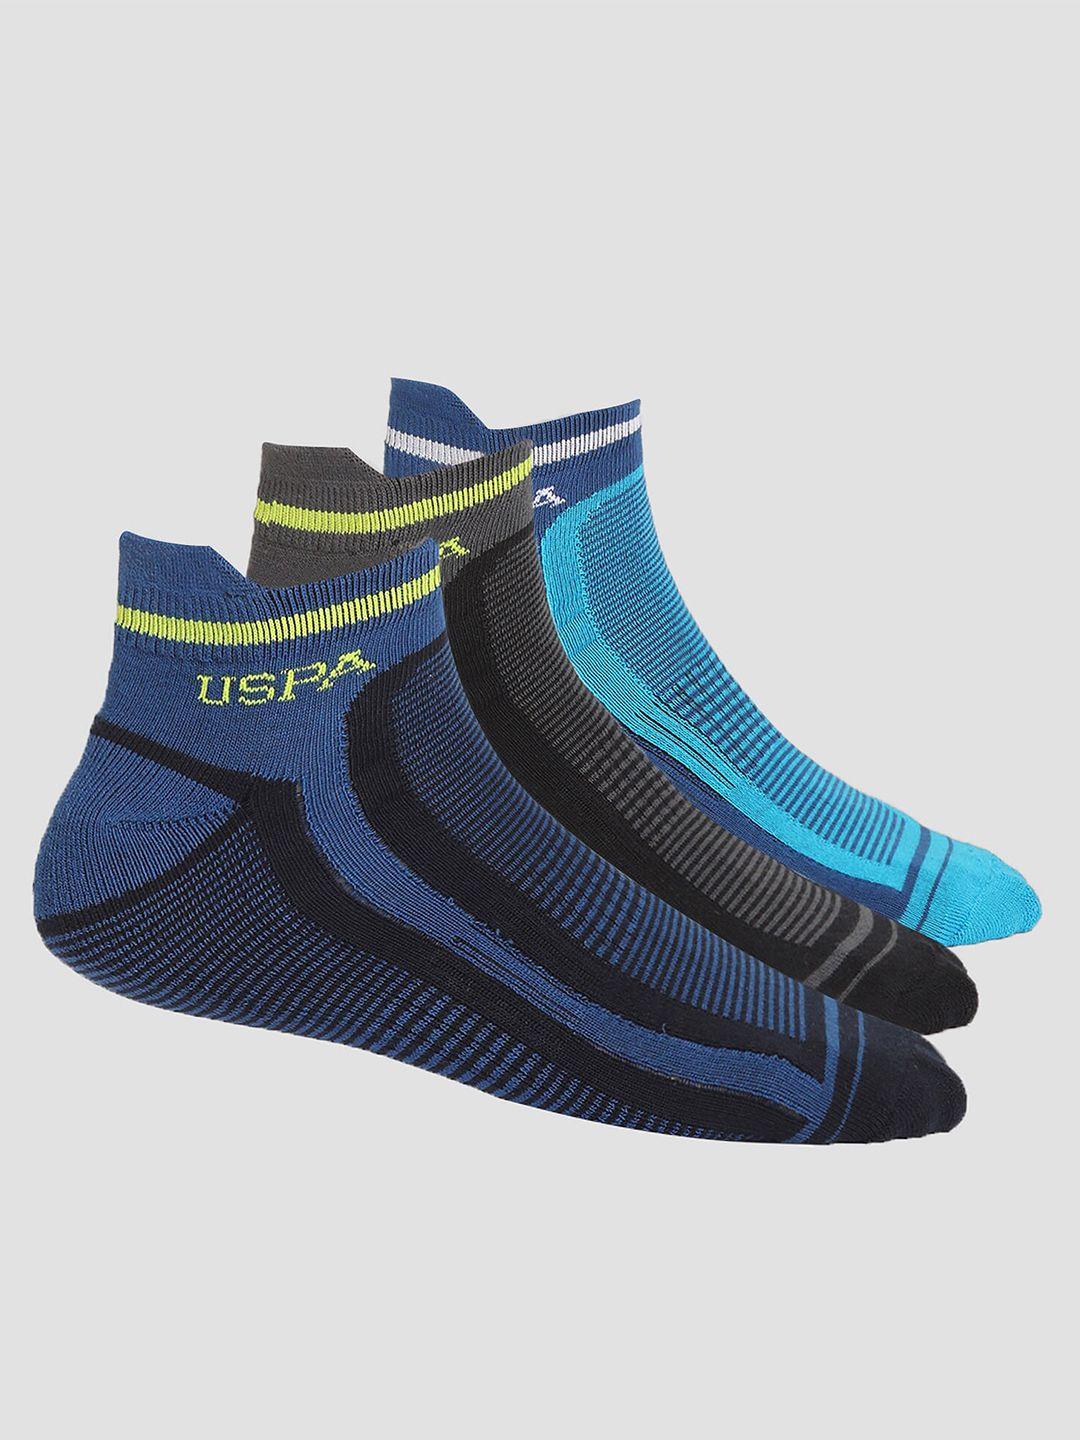 u.s. polo assn. men pack of 3 patterned ankle-length socks